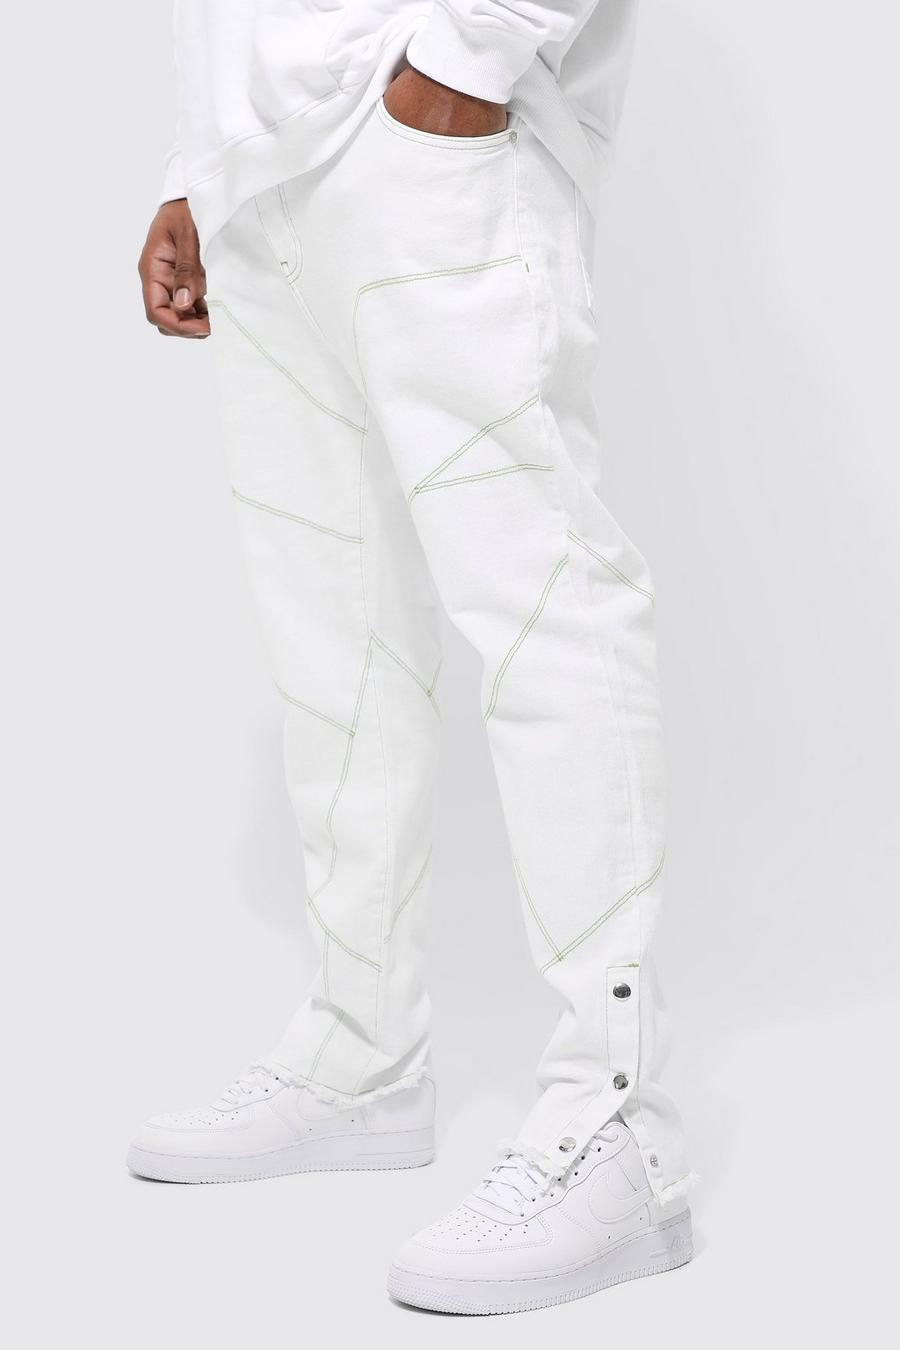 White bianco Plus Skinny Stretch Moto Contrast Stitch Jean 